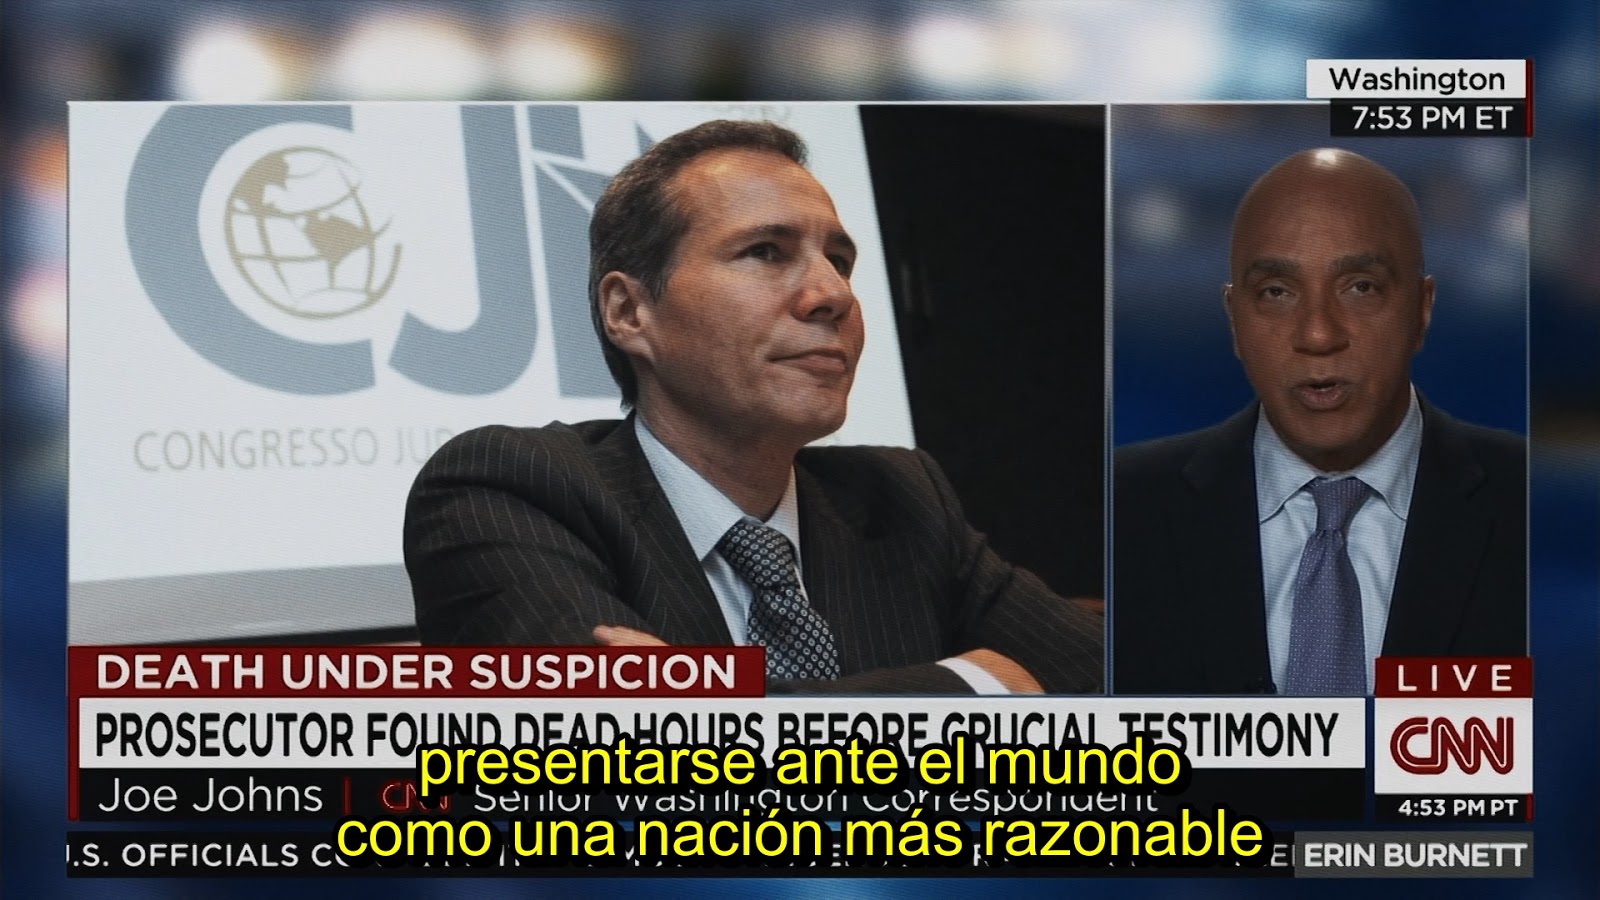 Nisman: el Fiscal, la Presidenta y el Espía 1080 Zippy